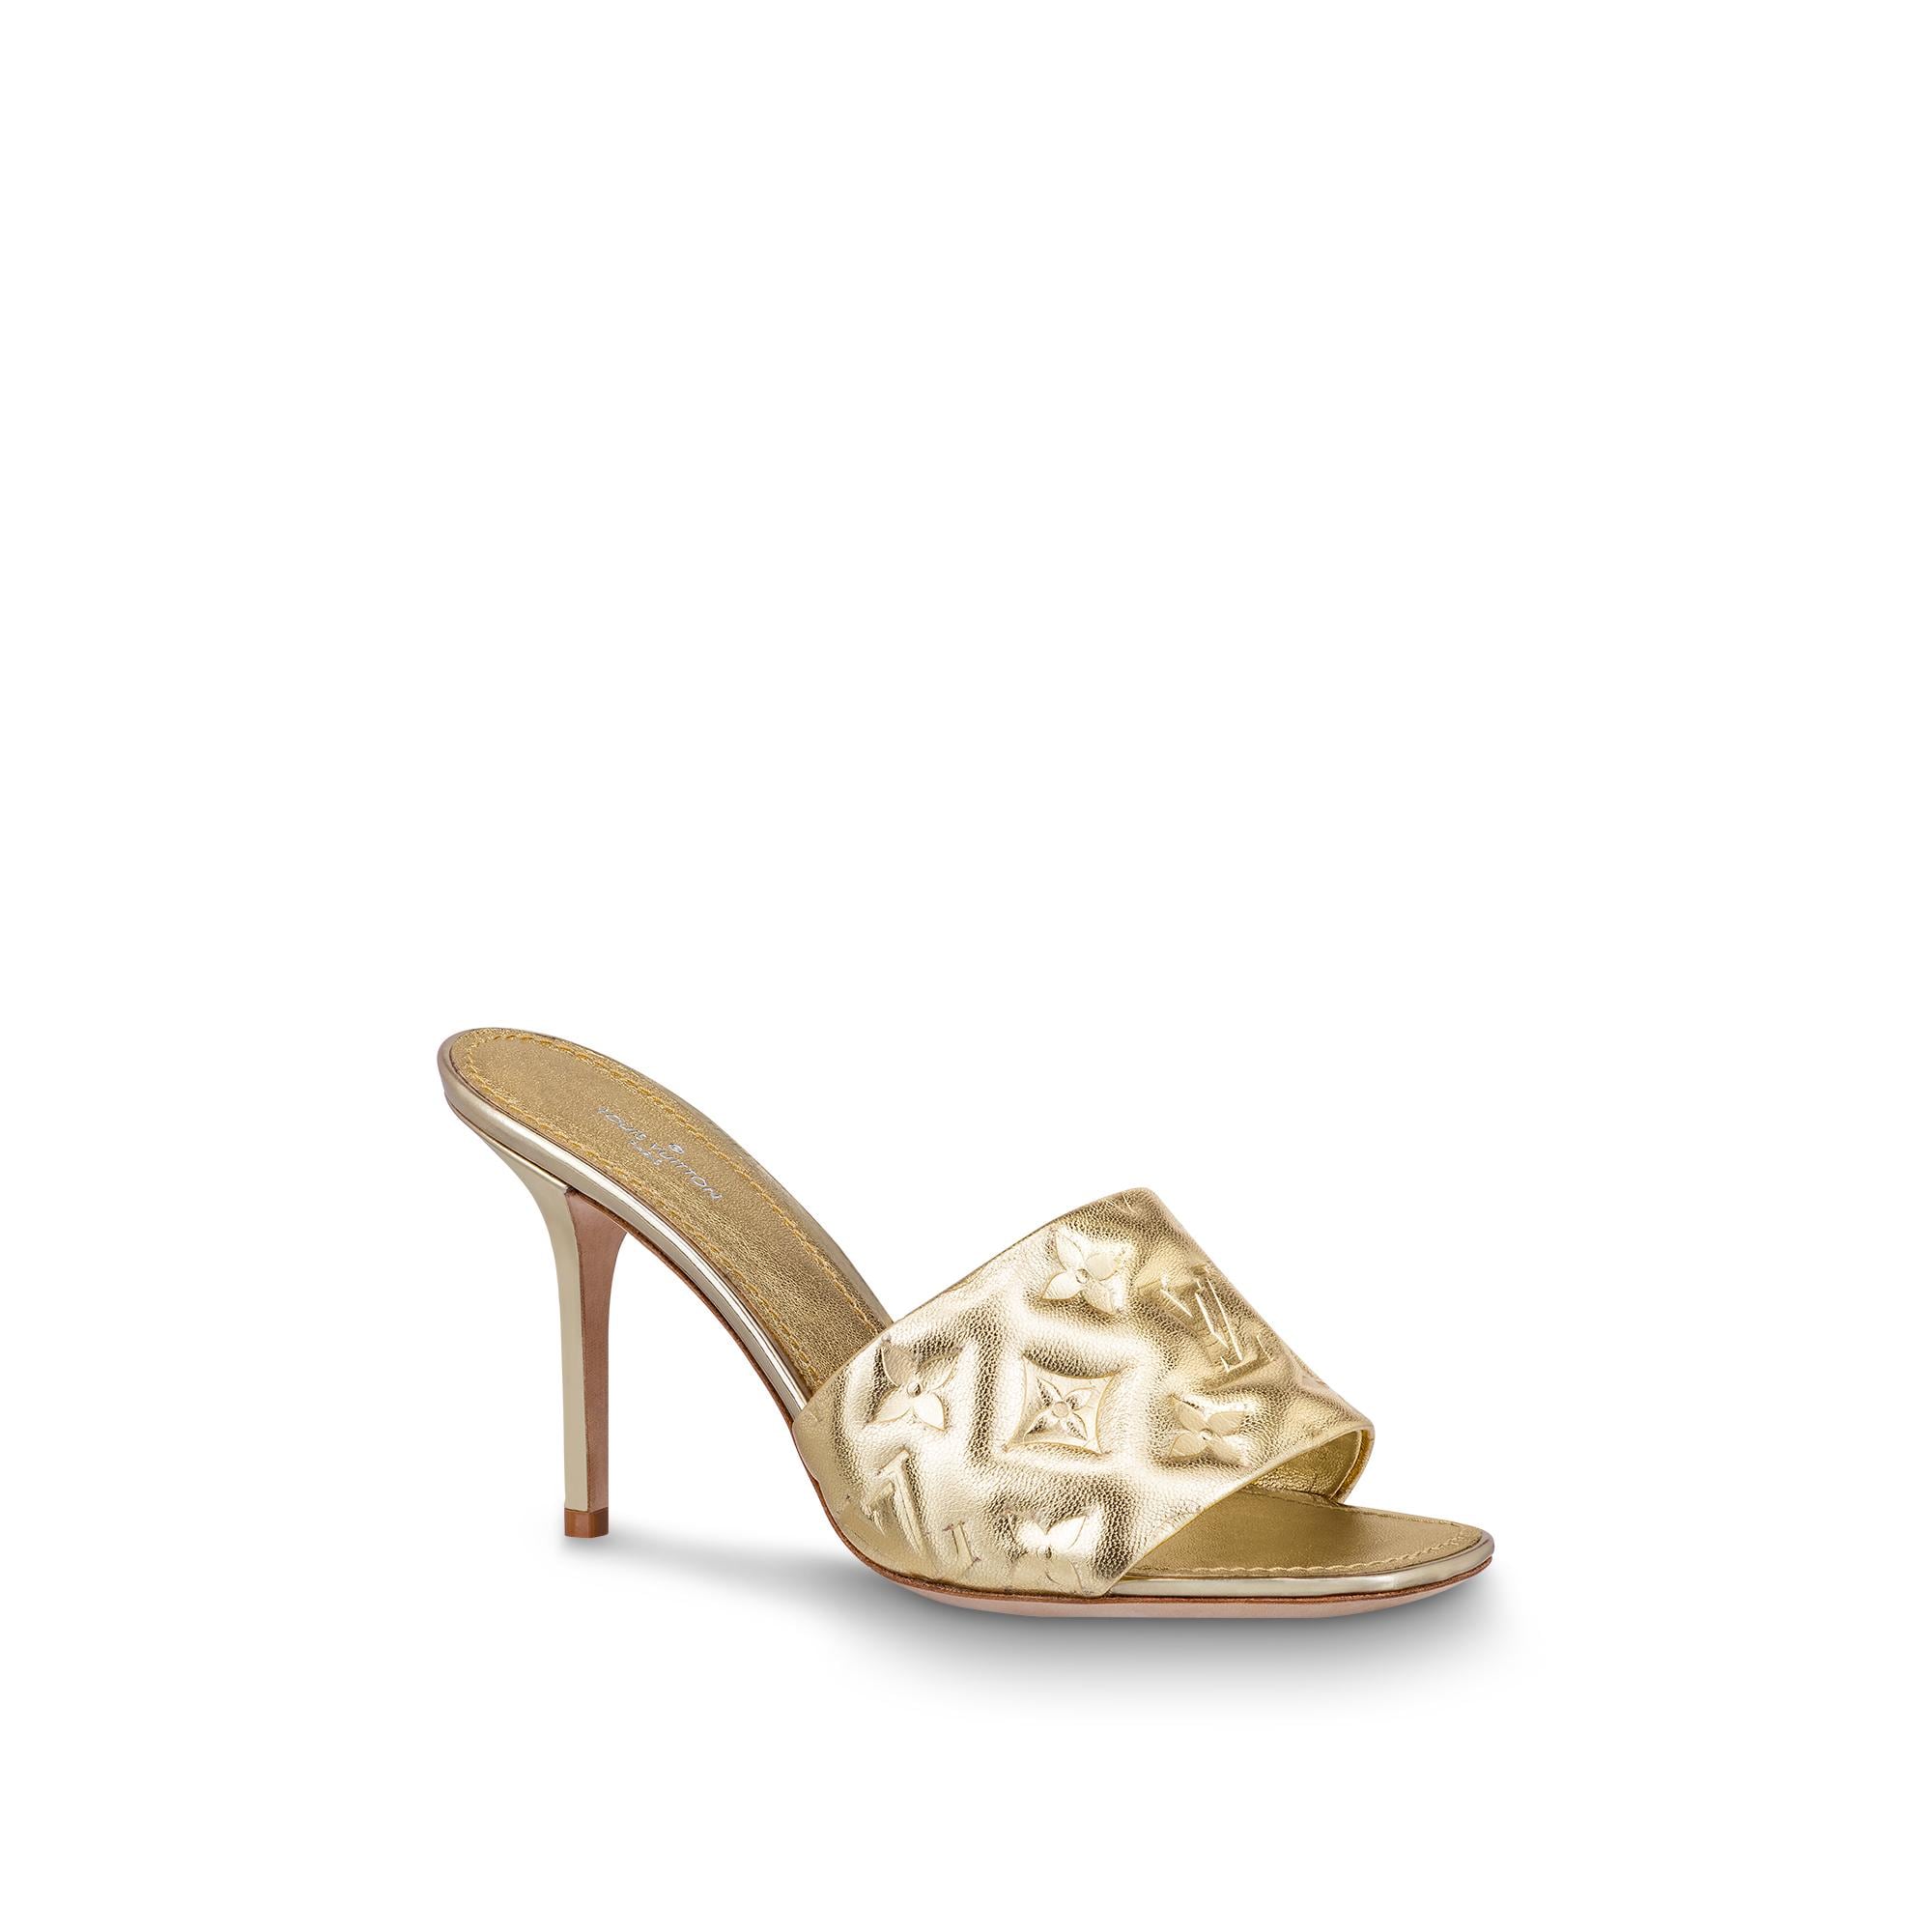 Louis Vuitton Revival Mule in Gold – Shoes 1A8QM7